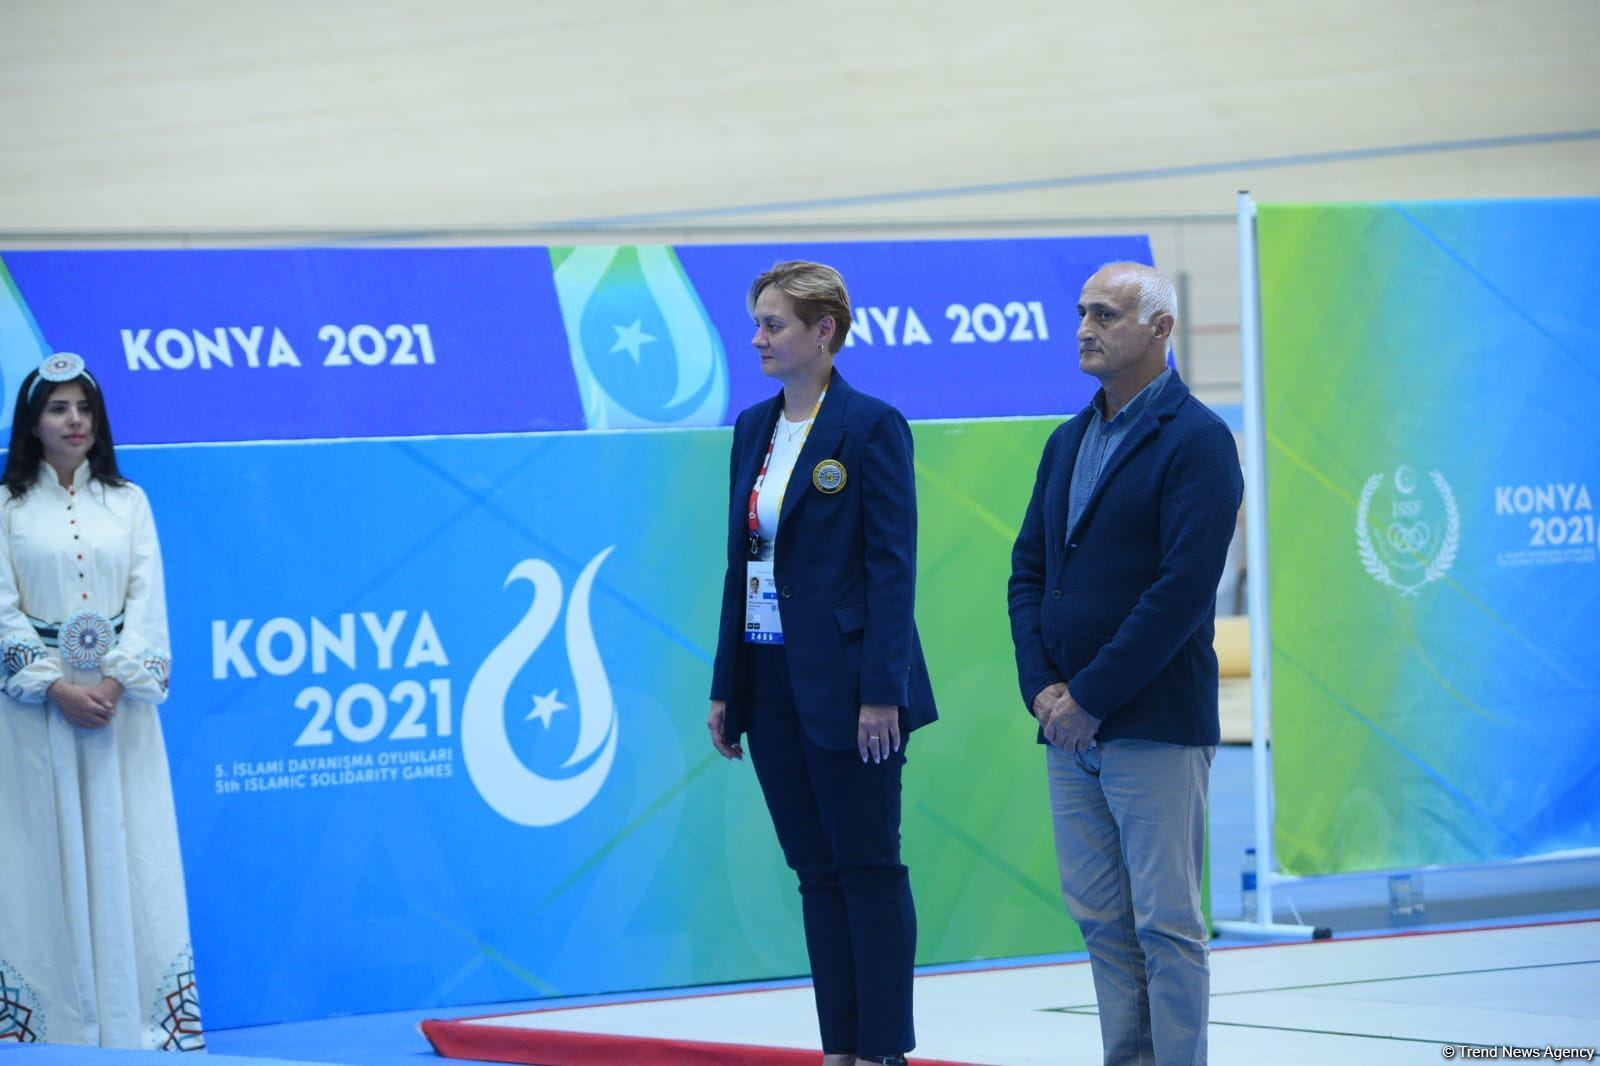 Художественная гимнастика на Исламиаде: награды азербайджанских спортсменок (ФОТО)